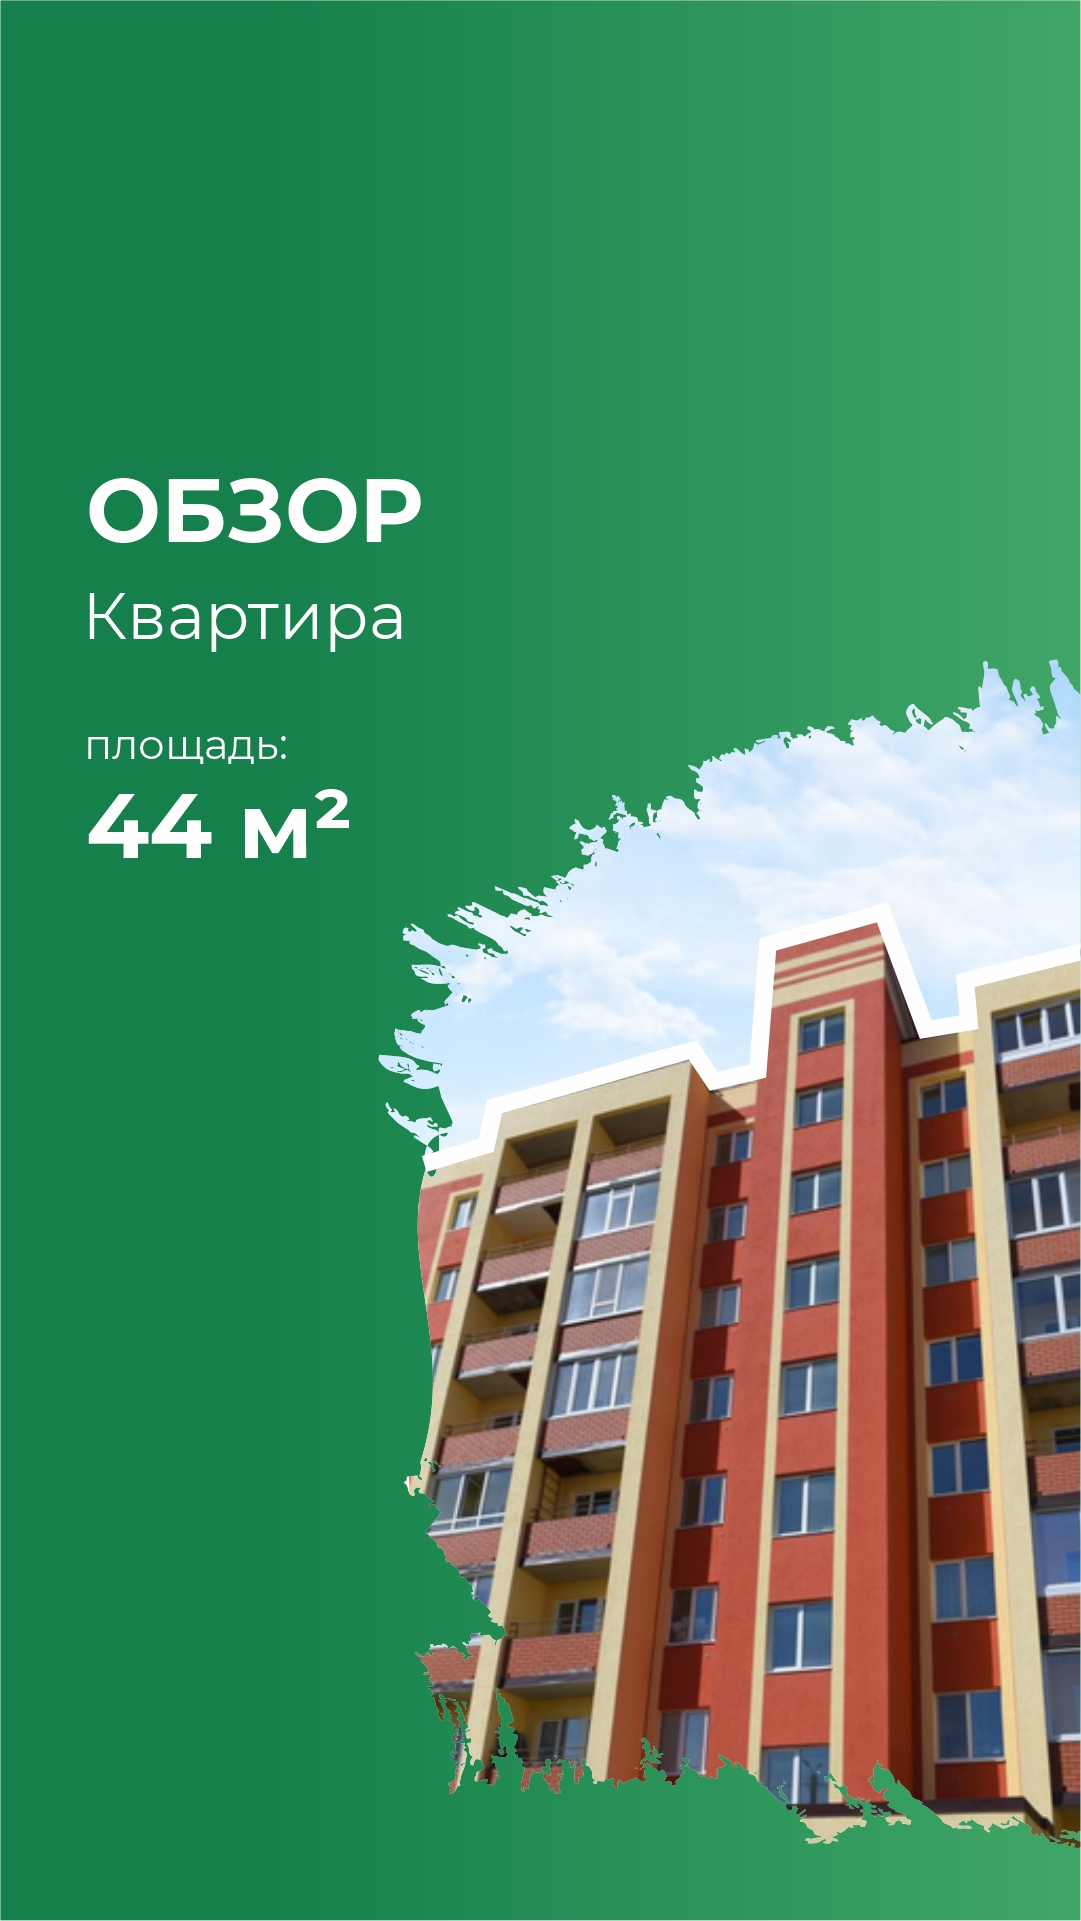 Однокомнатная квартира  площадью 44,12 м² в ЖК "Михайловка Green Place "